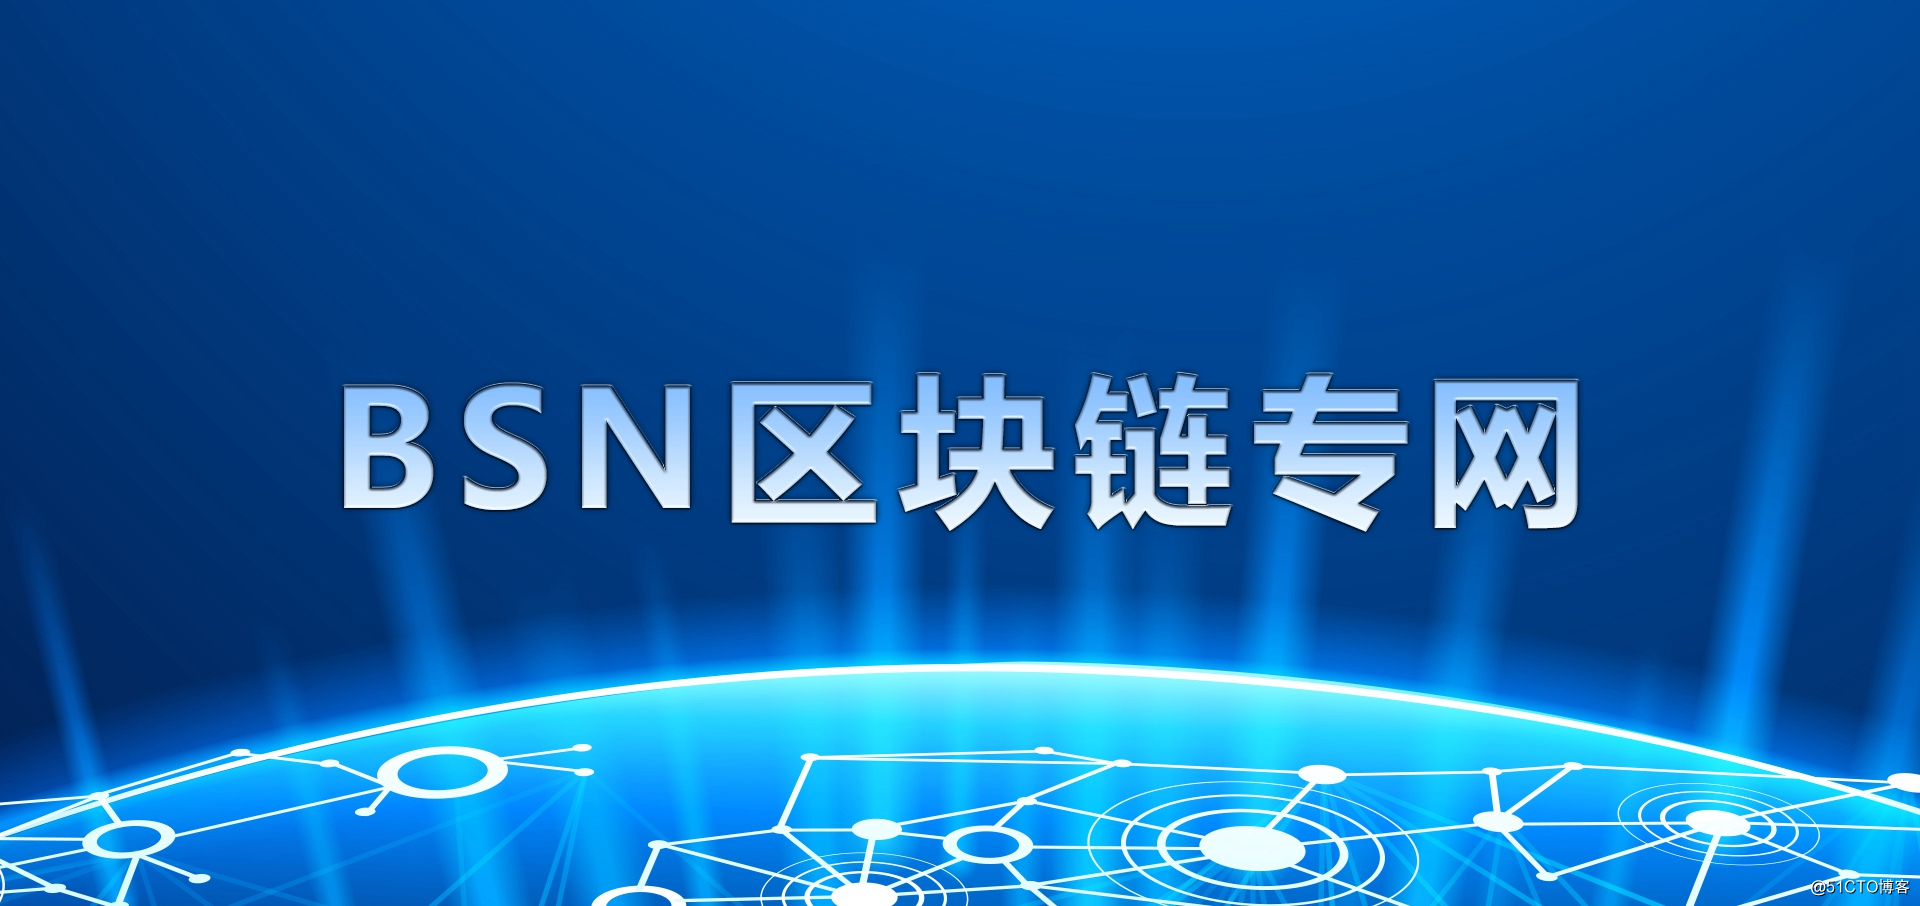 BSN区块链专网产品正式发布.jpg